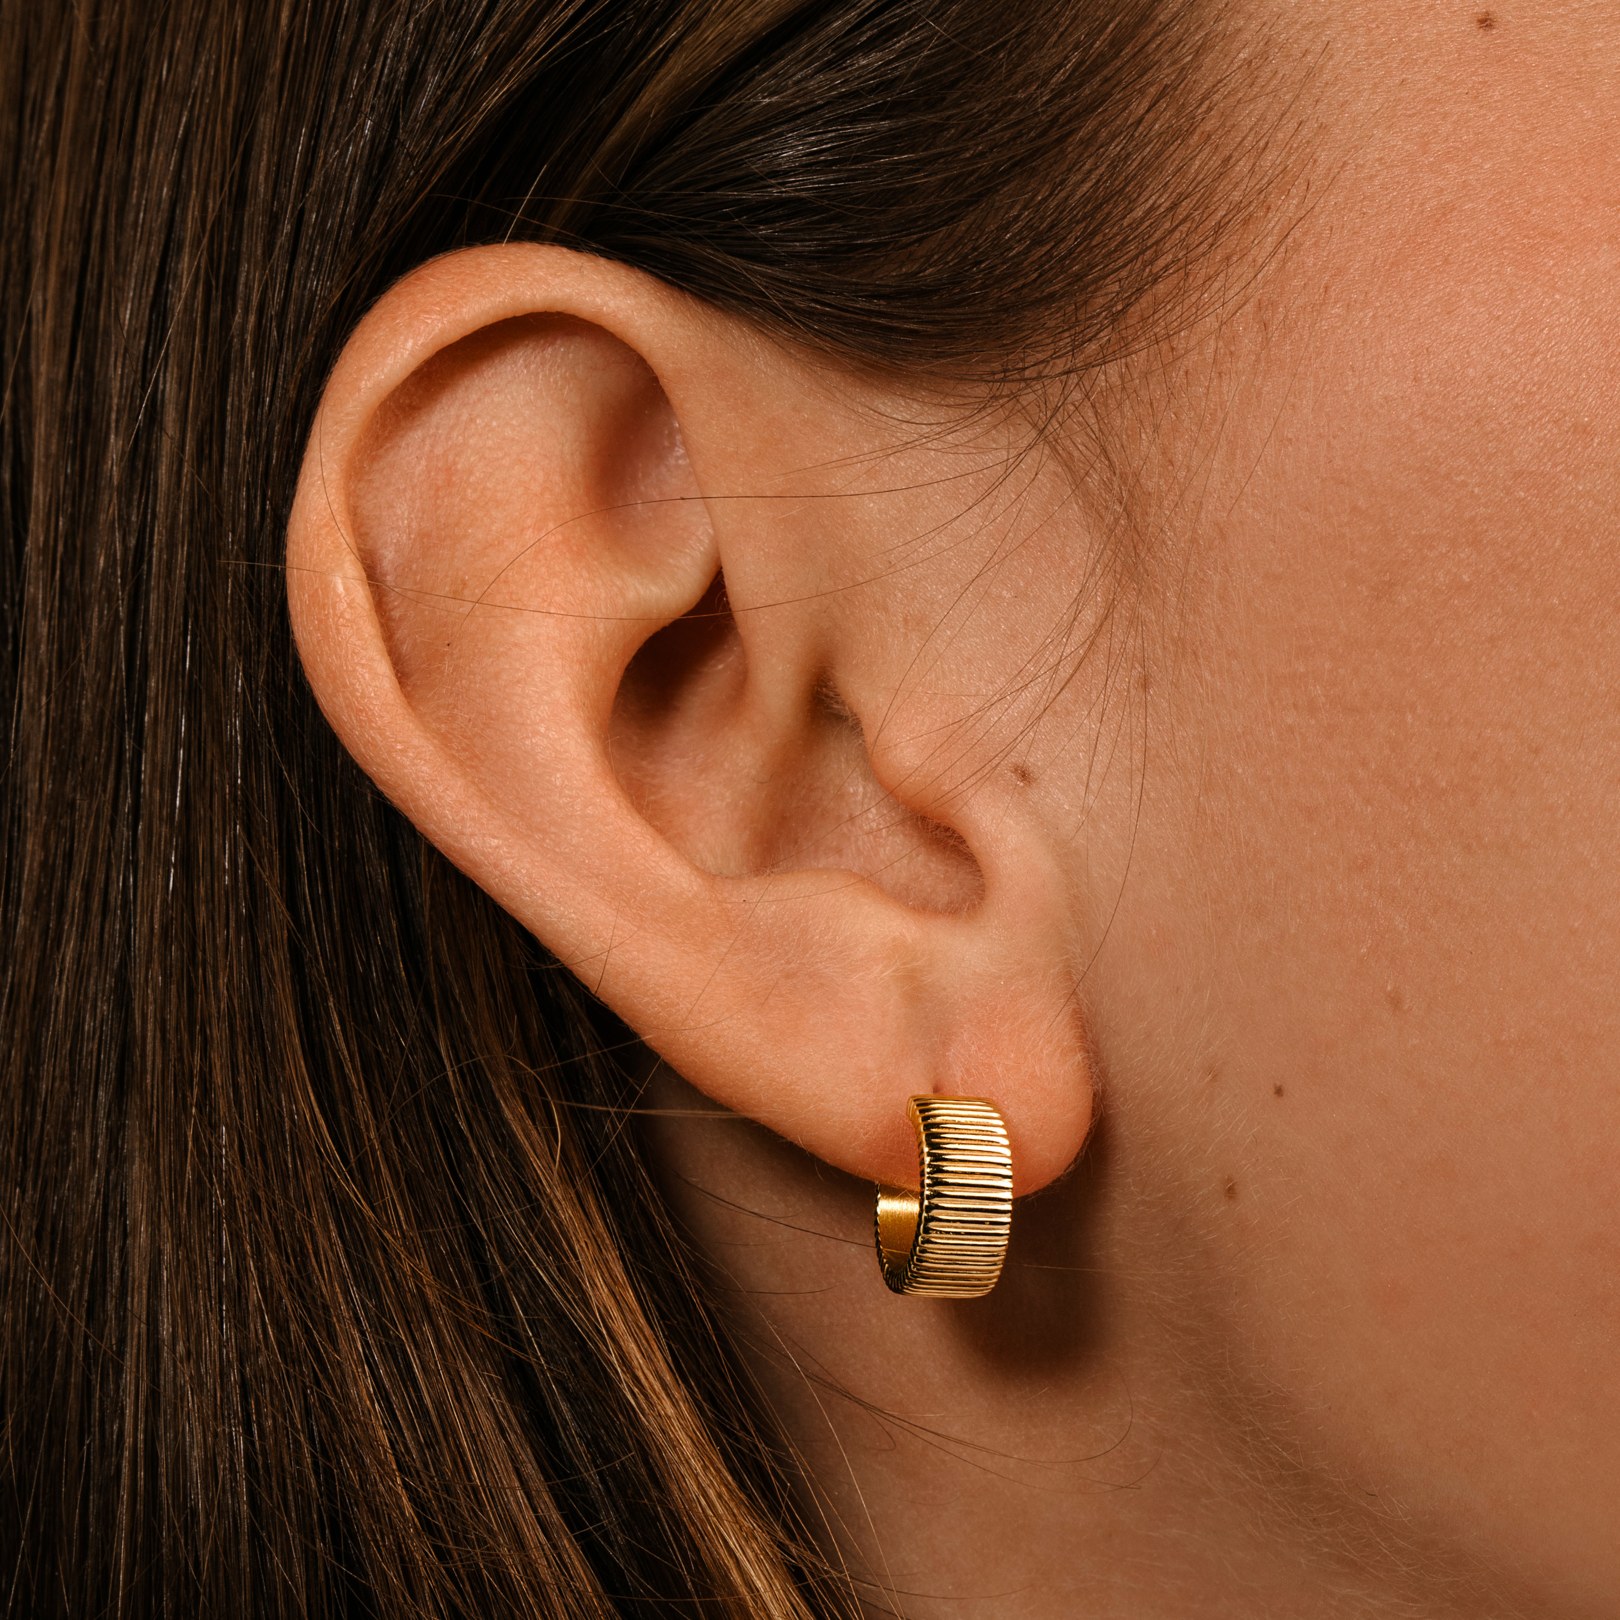 Skyline earrings